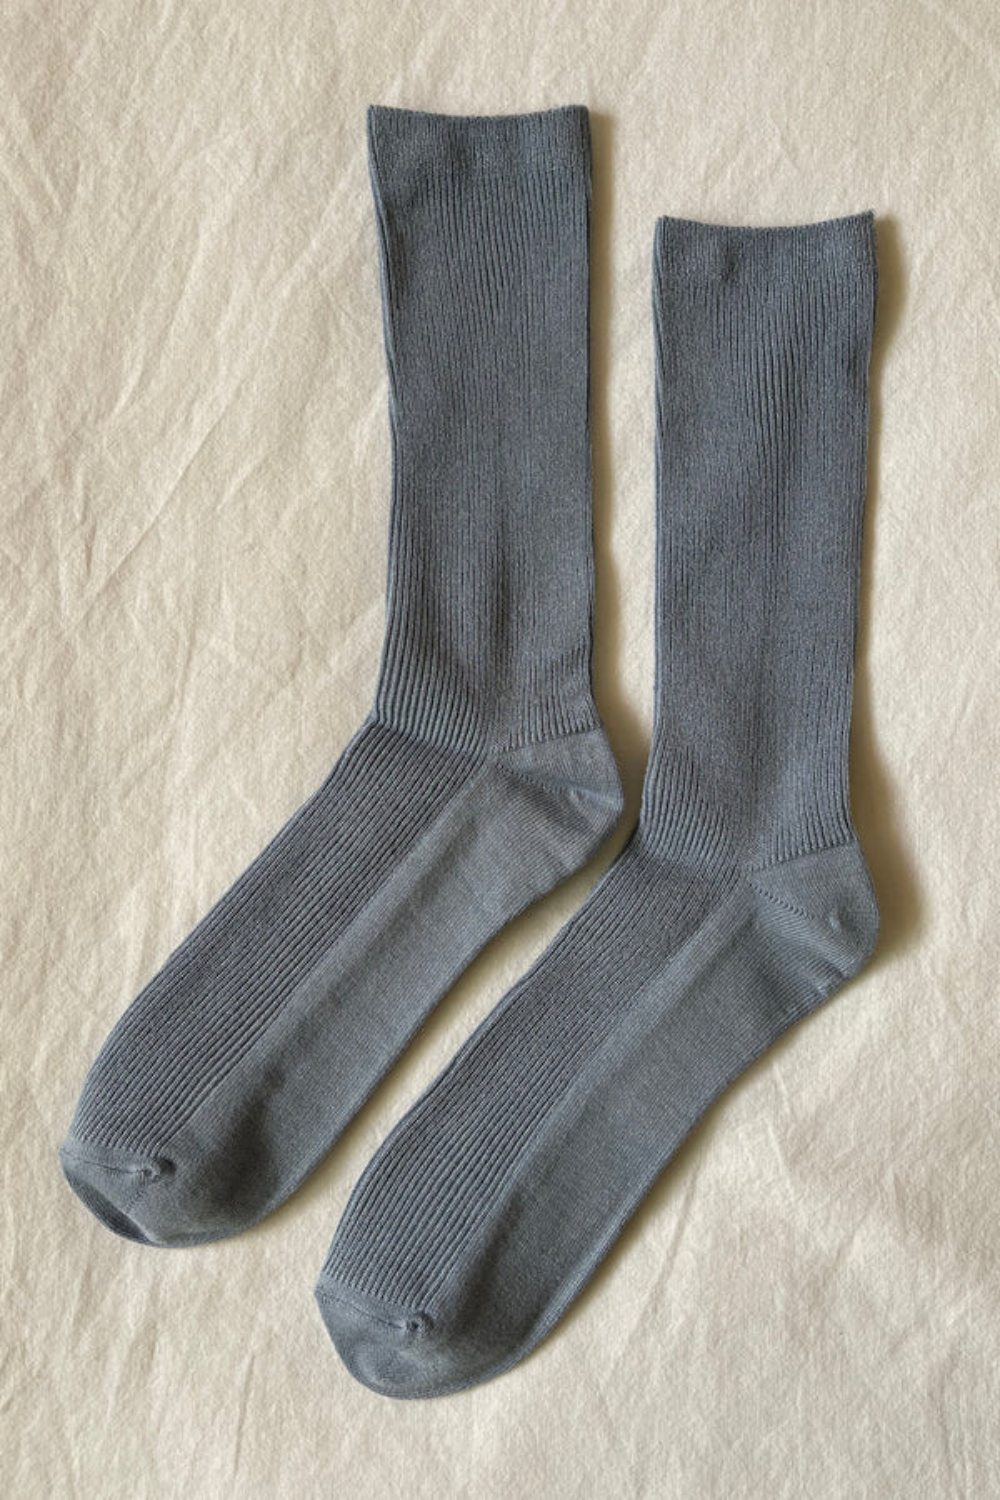 Trouser Socks By Le Bon - Blue Bell